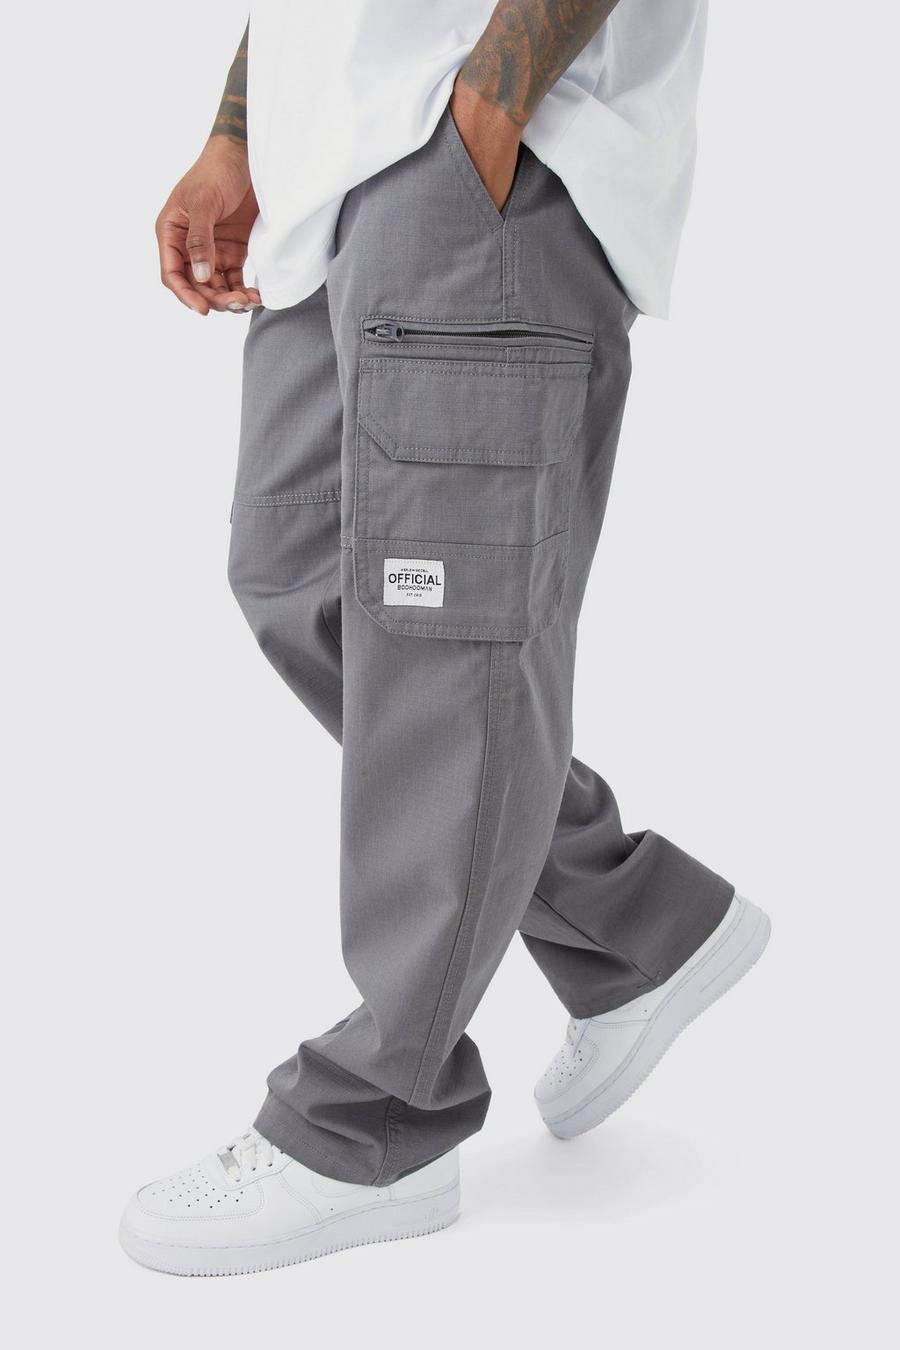 Pantaloni Cargo fissi in nylon ripstop con zip ed etichetta in tessuto, Charcoal